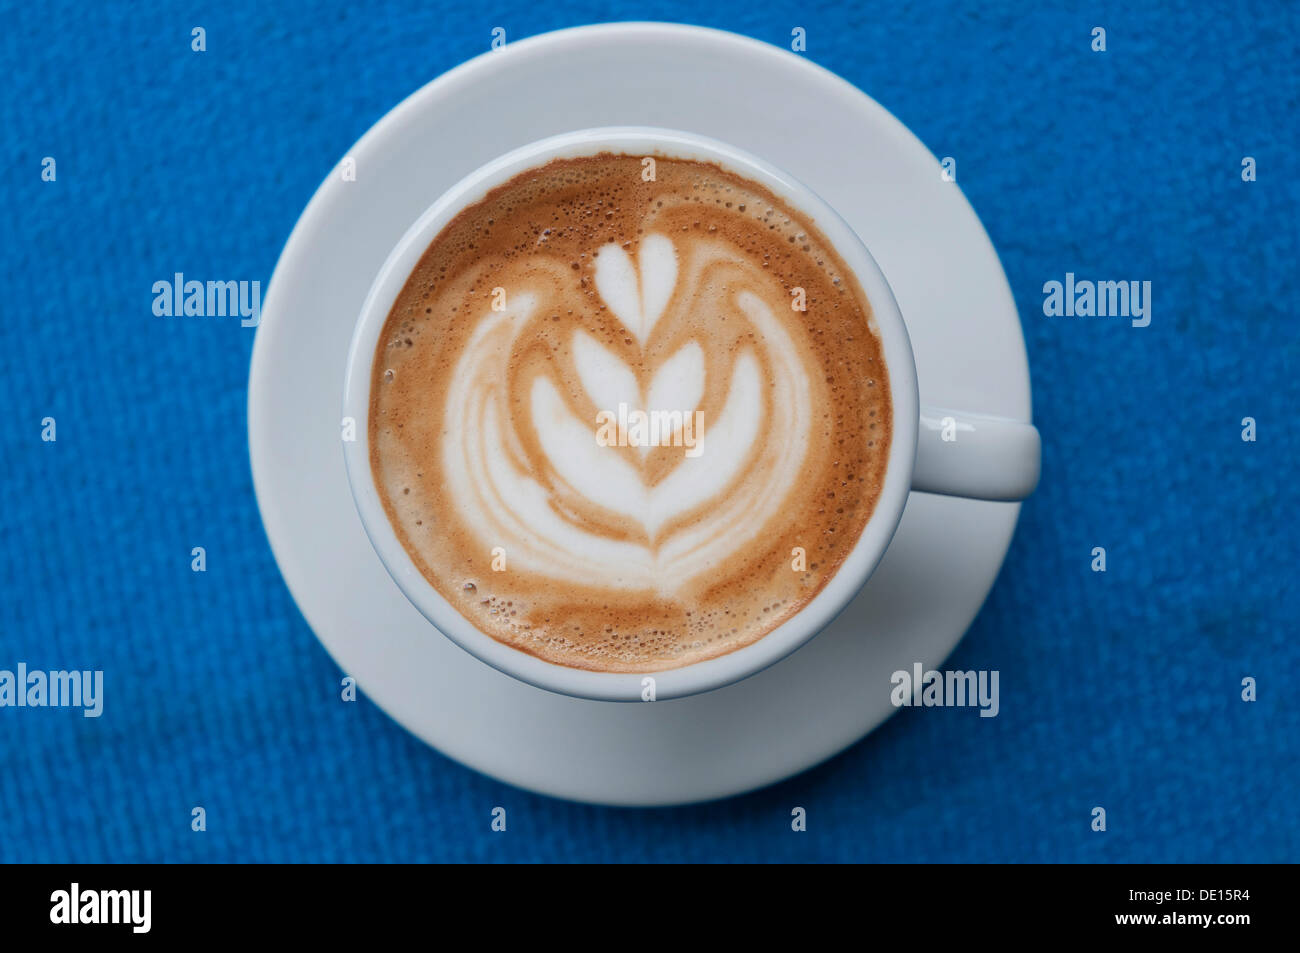 Le latte art, latte, une mousse de lait dans la Rosetta Banque D'Images